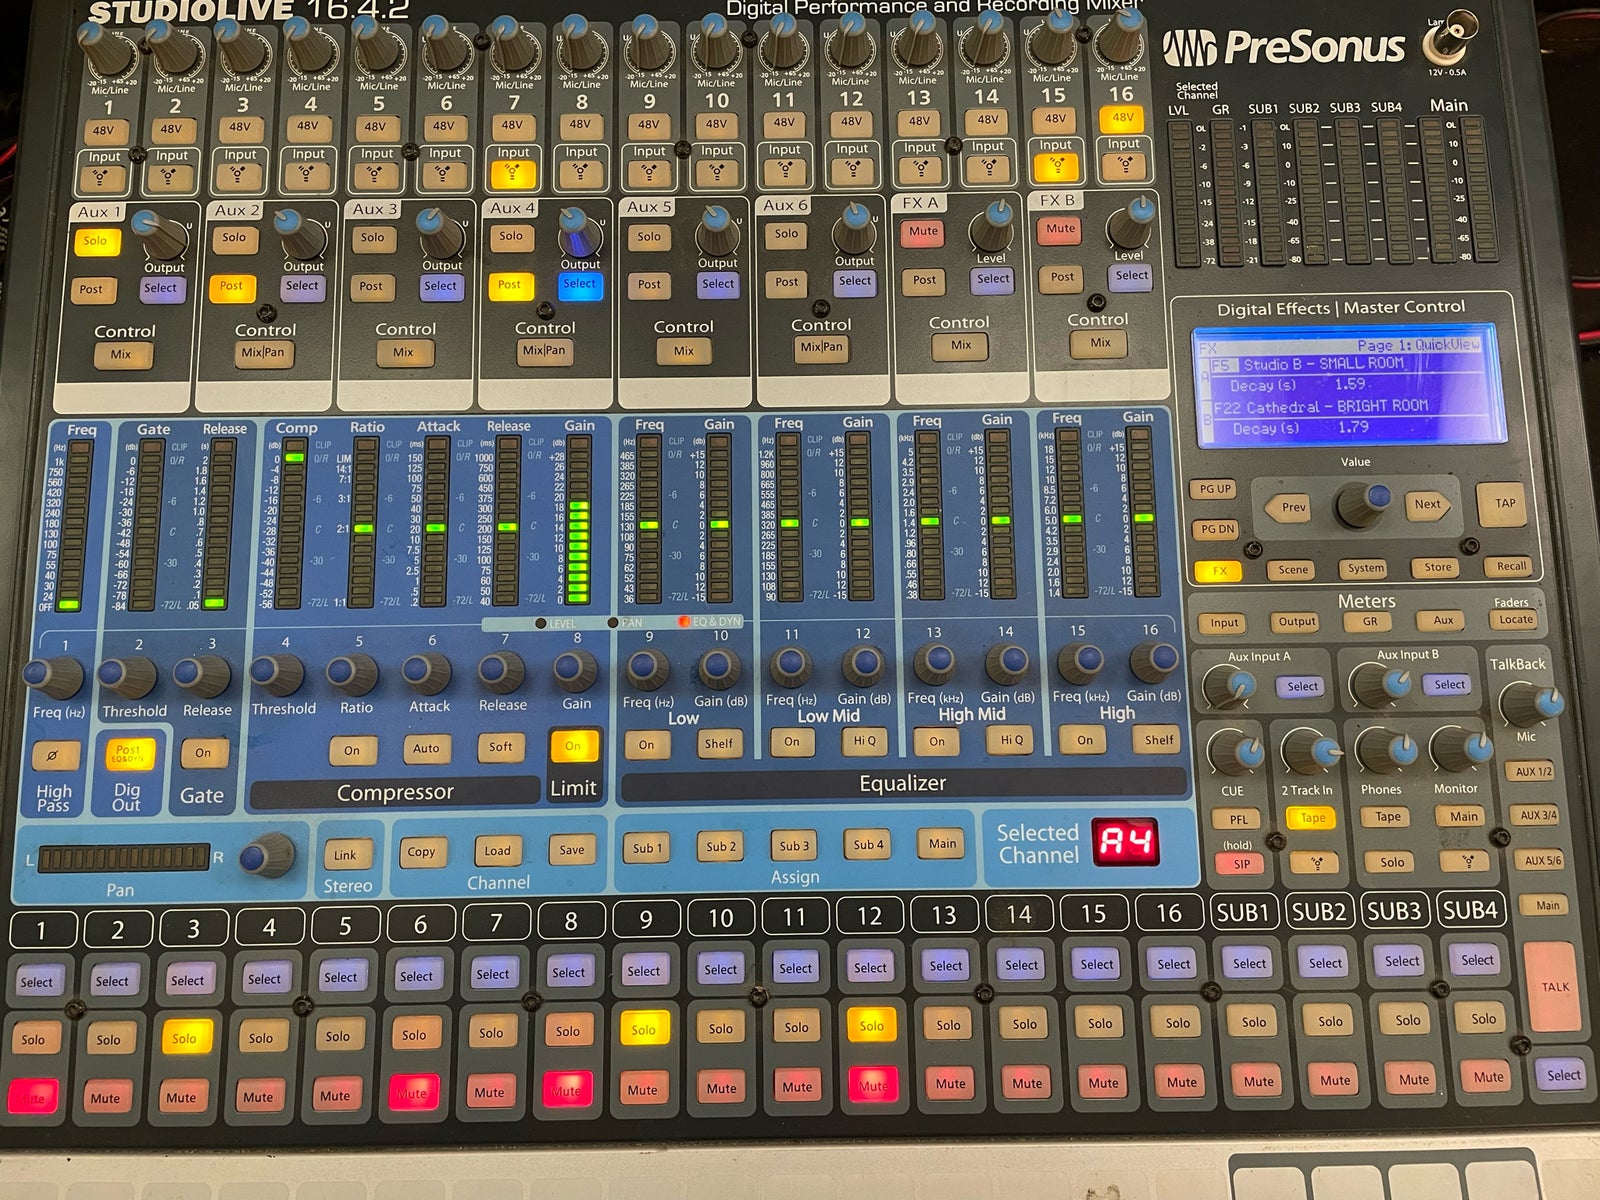 Digital mixer, Presonus StudioLive 16.4.2